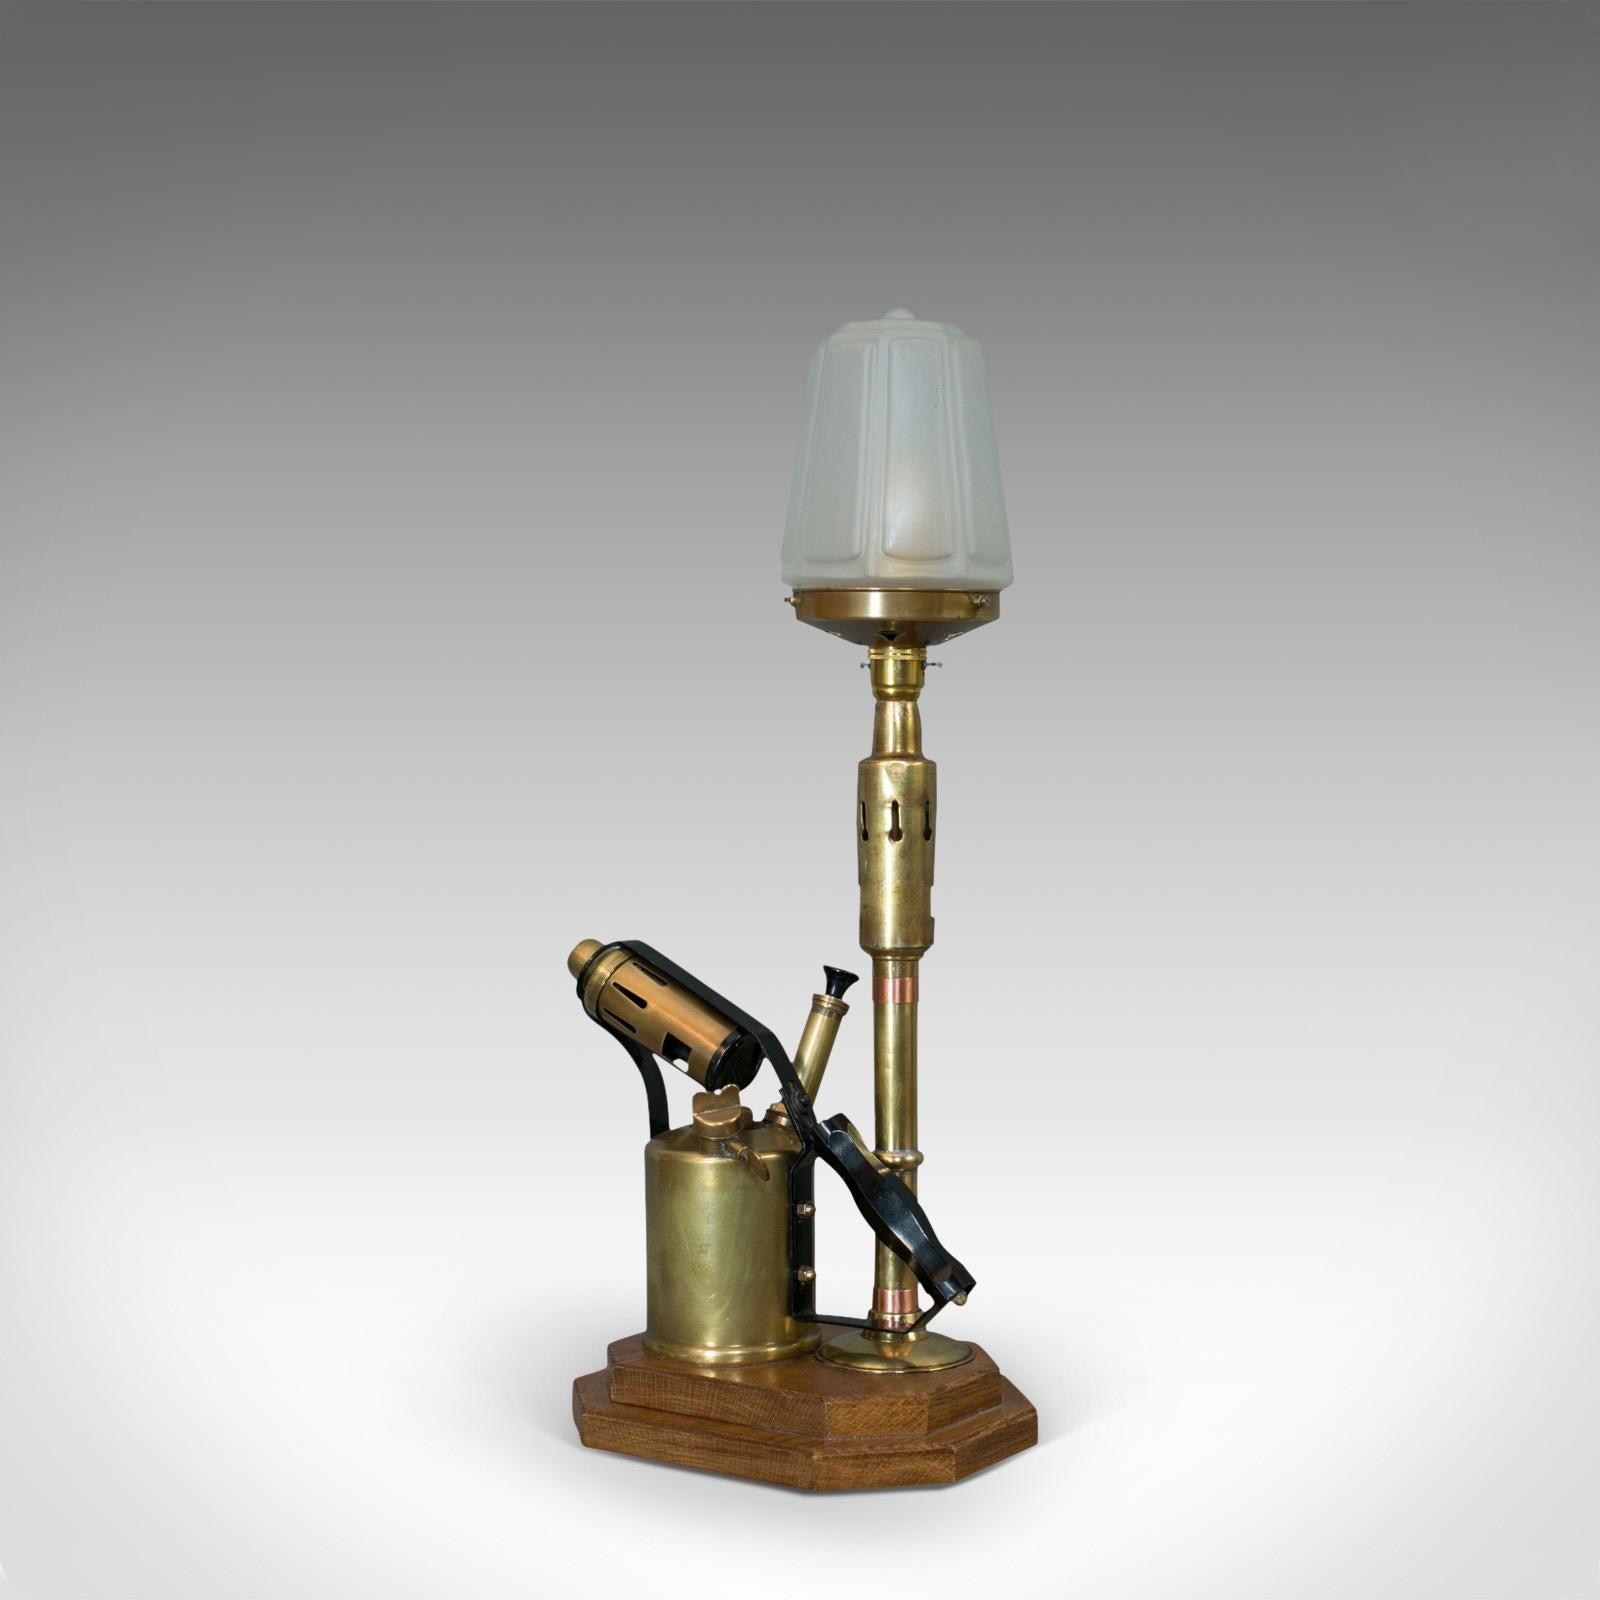 Dies ist eine dekorative Vintage-Lampe. Eine englische Messing-Blasfackel mit Schirm und Eichenholzsockel aus dem 20.

Faszinierende Lampe mit industriellem Charme
In ausgezeichnetem Zustand, voll funktionsfähig mit hochwertigem, undurchsichtigem